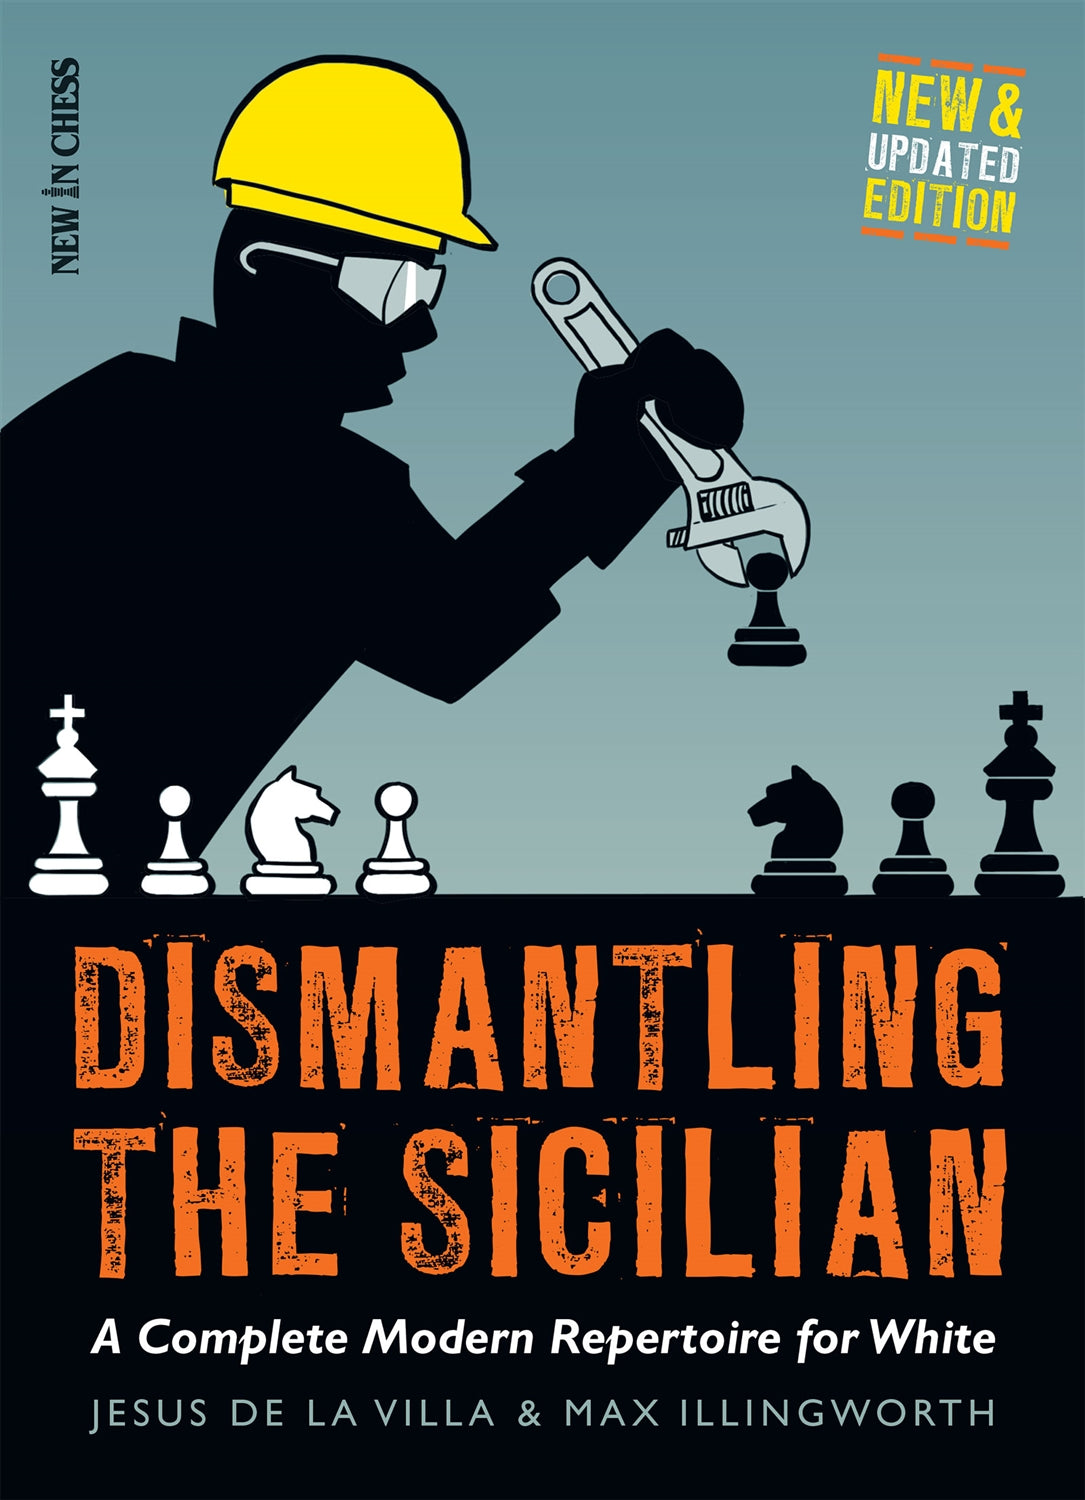 The Modernized Anti-Sicilians – Volume 1 – Rossolimo Variation - Thinkers  Publishing